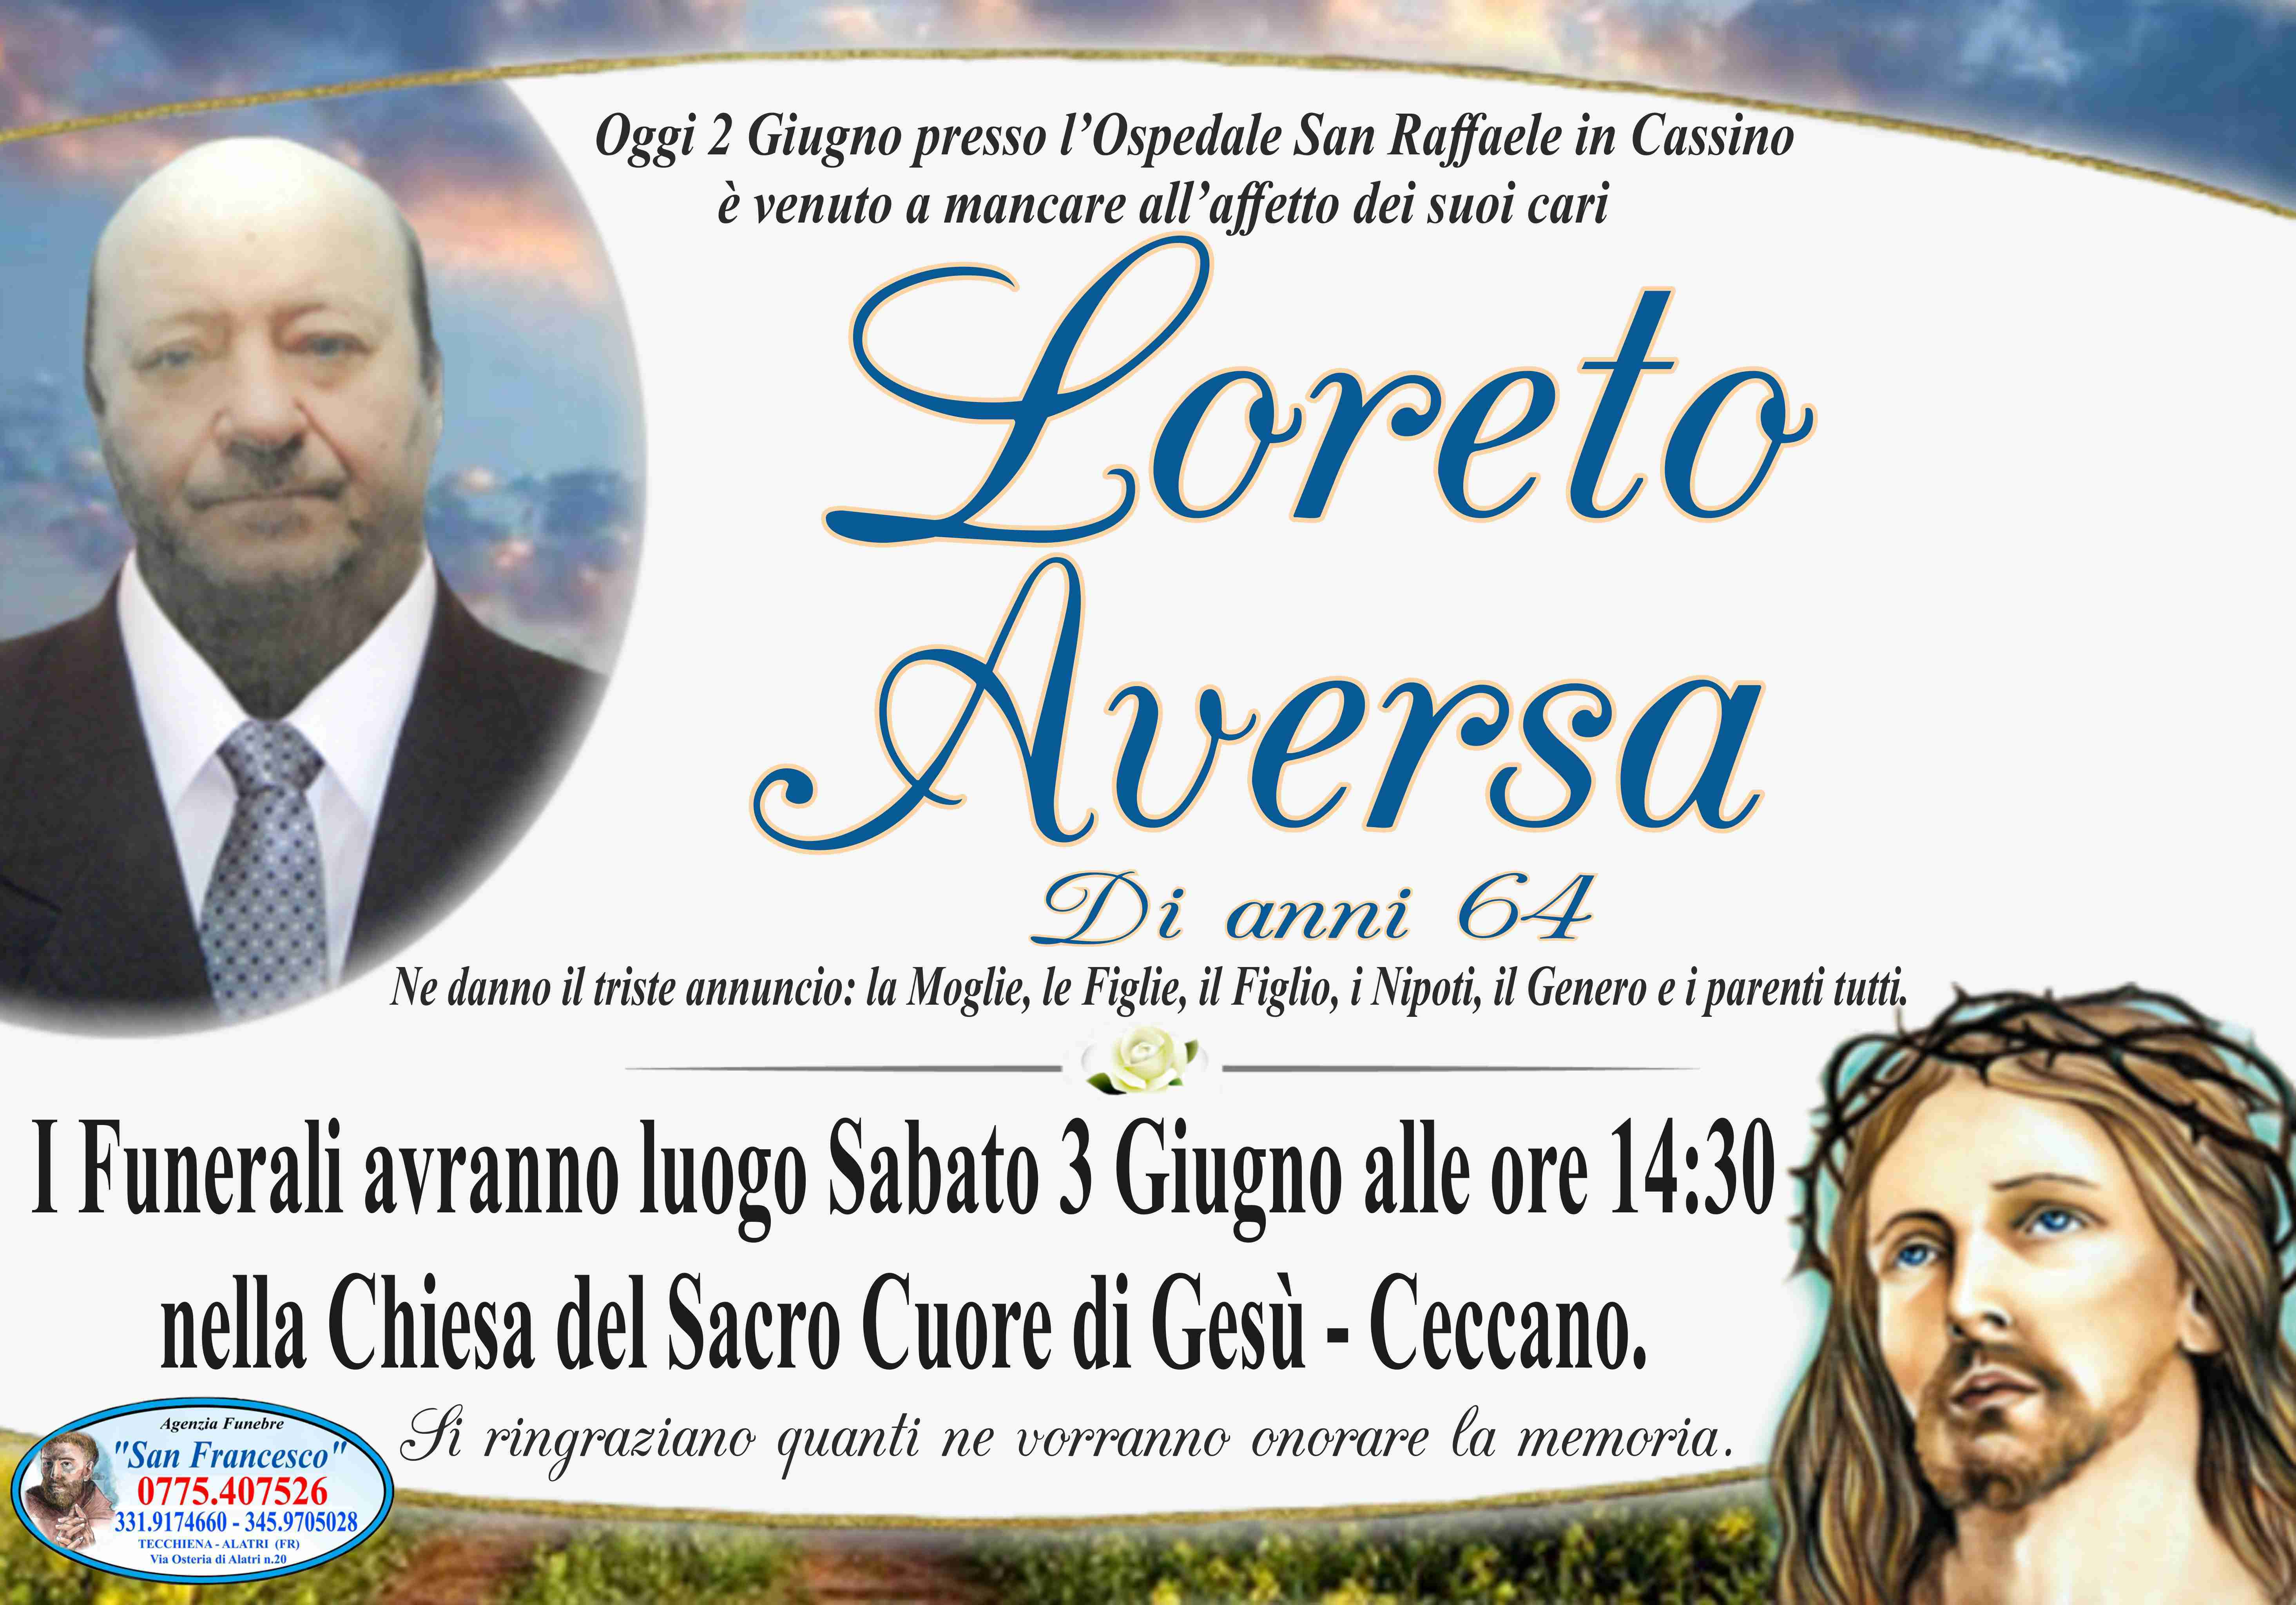 Loreto Aversa